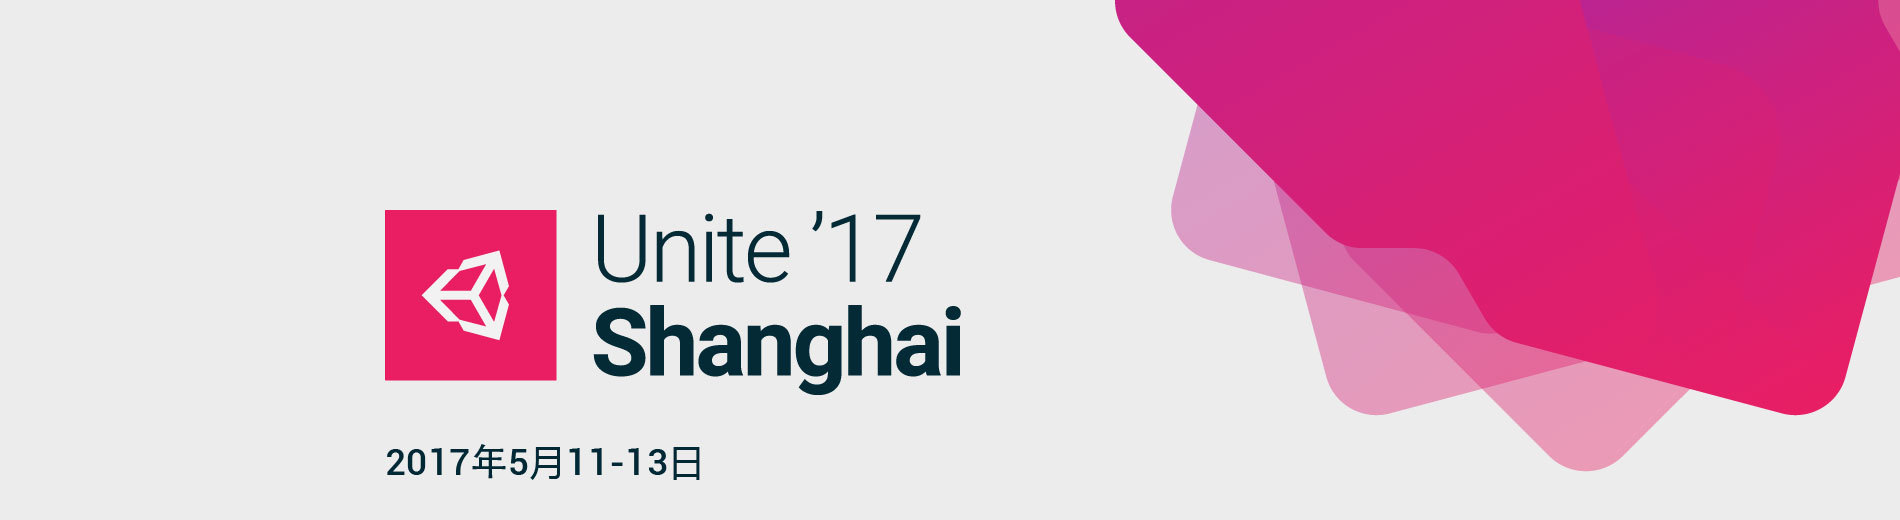 Unite 2017 Shanghai